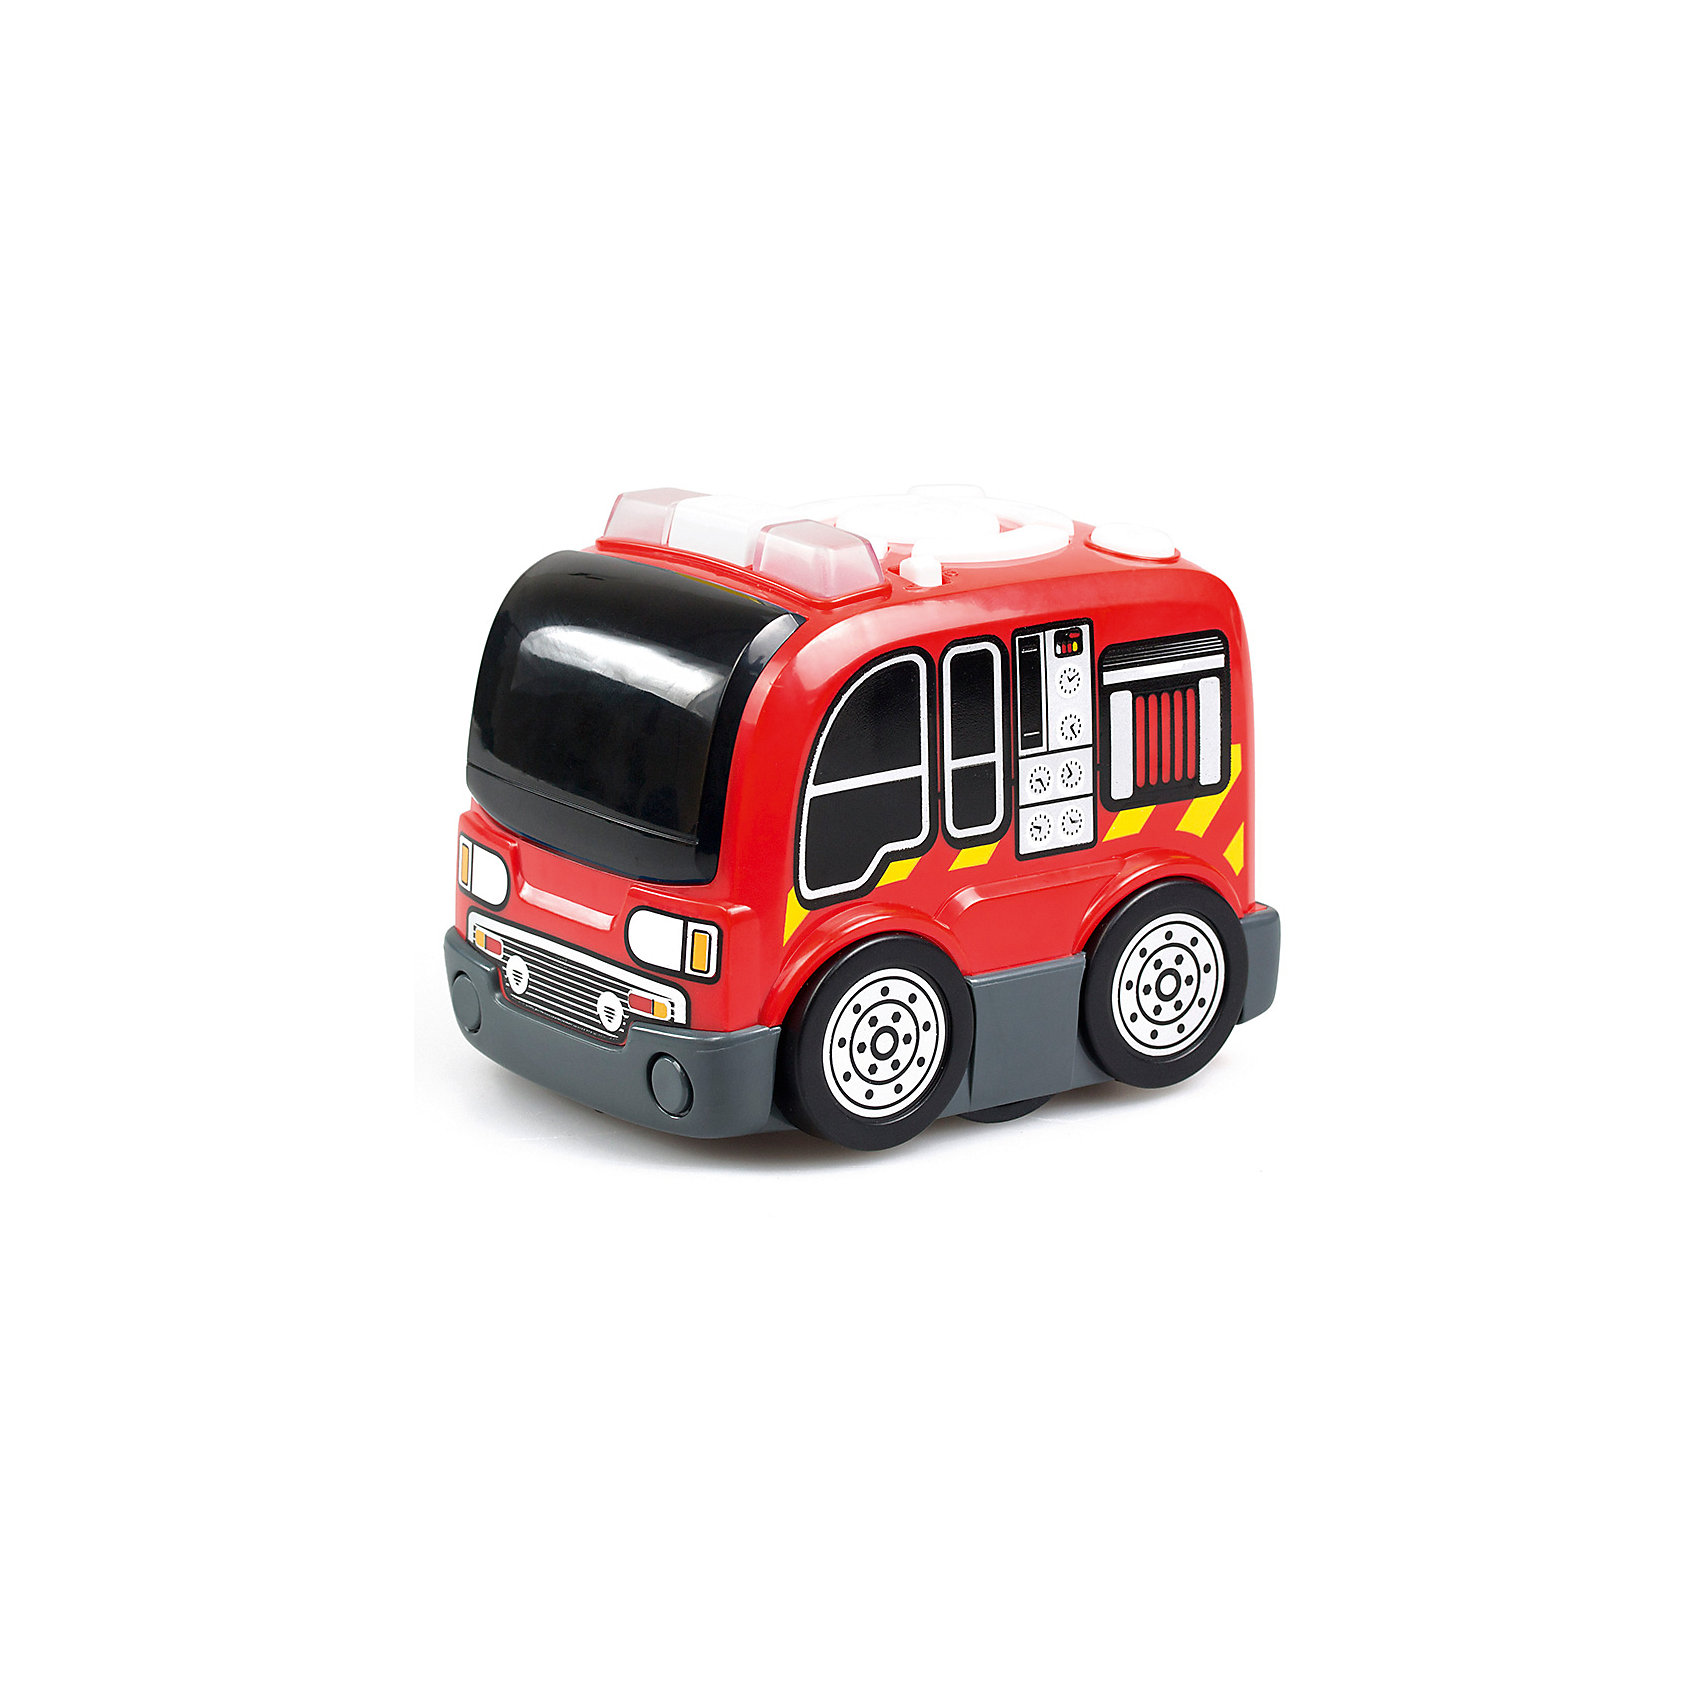 Программируемая пожарная машина Silverlit 12863093